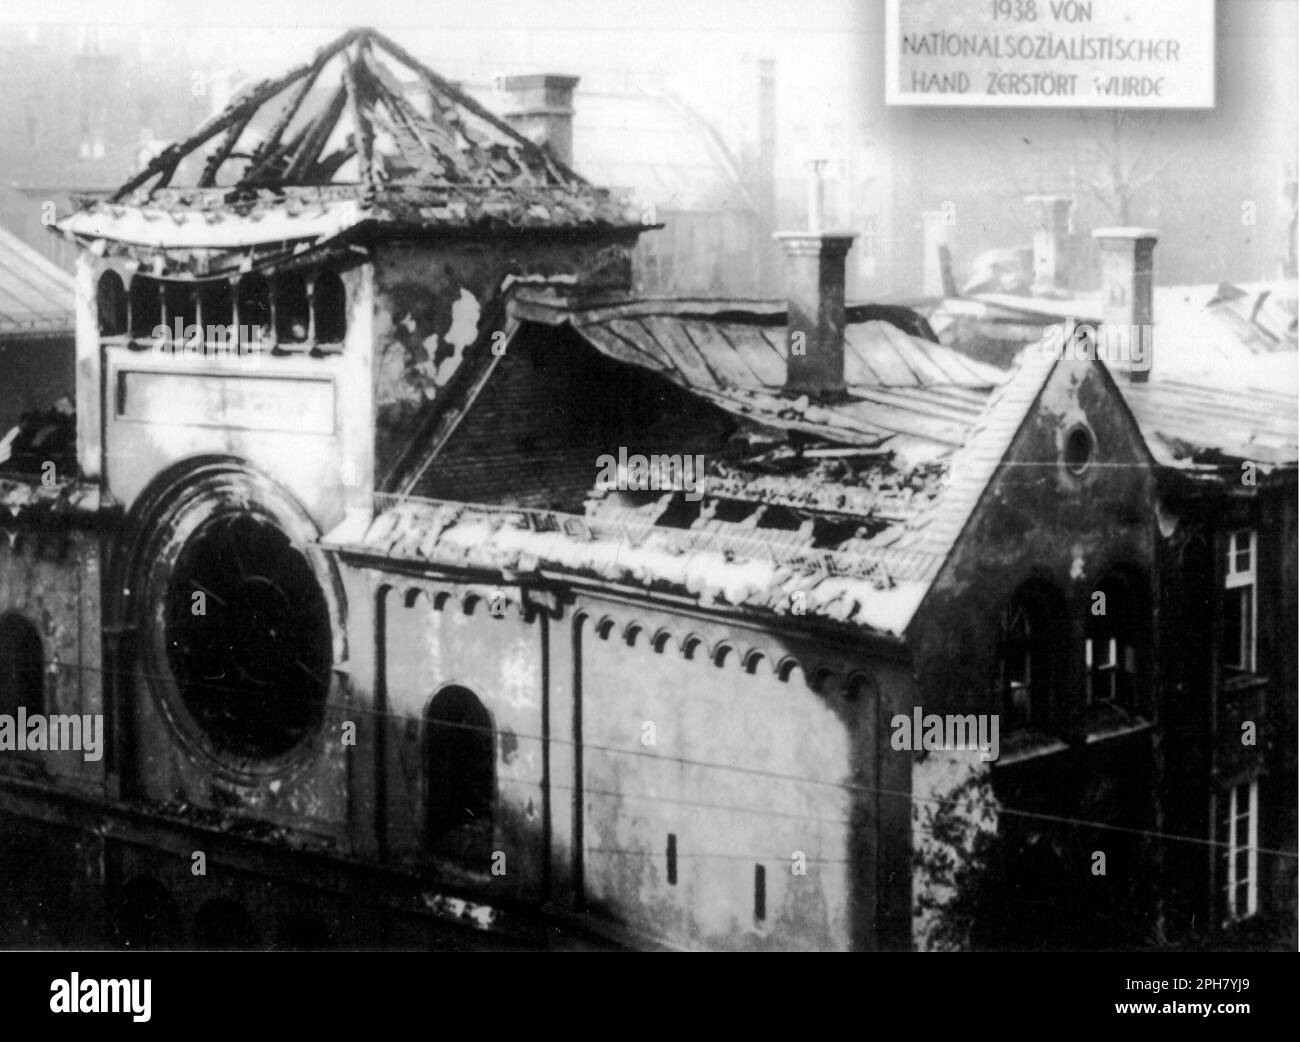 La sinagoga Ohel Yaakov in rovina a Monaco. Kristallnacht è stato un pogrom a livello nazionale che è stato organizzato e realizzato dal partito nazista il 9 novembre 1938. Negozi e sinagoghe furono distrutti e la gente umiliata e picchiata mentre la polizia guardava, o addirittura aiutava. Anche se la quantità di danni e il numero di persone attaccate era piuttosto piccolo, il fatto che fosse completamente indisturbato mostrò ai nazisti che potevano davvero iniziare con gli ebrei e, come tale, è una delle pietre miliari sulla strada per l'Olocausto. https://commons.wiki Foto Stock